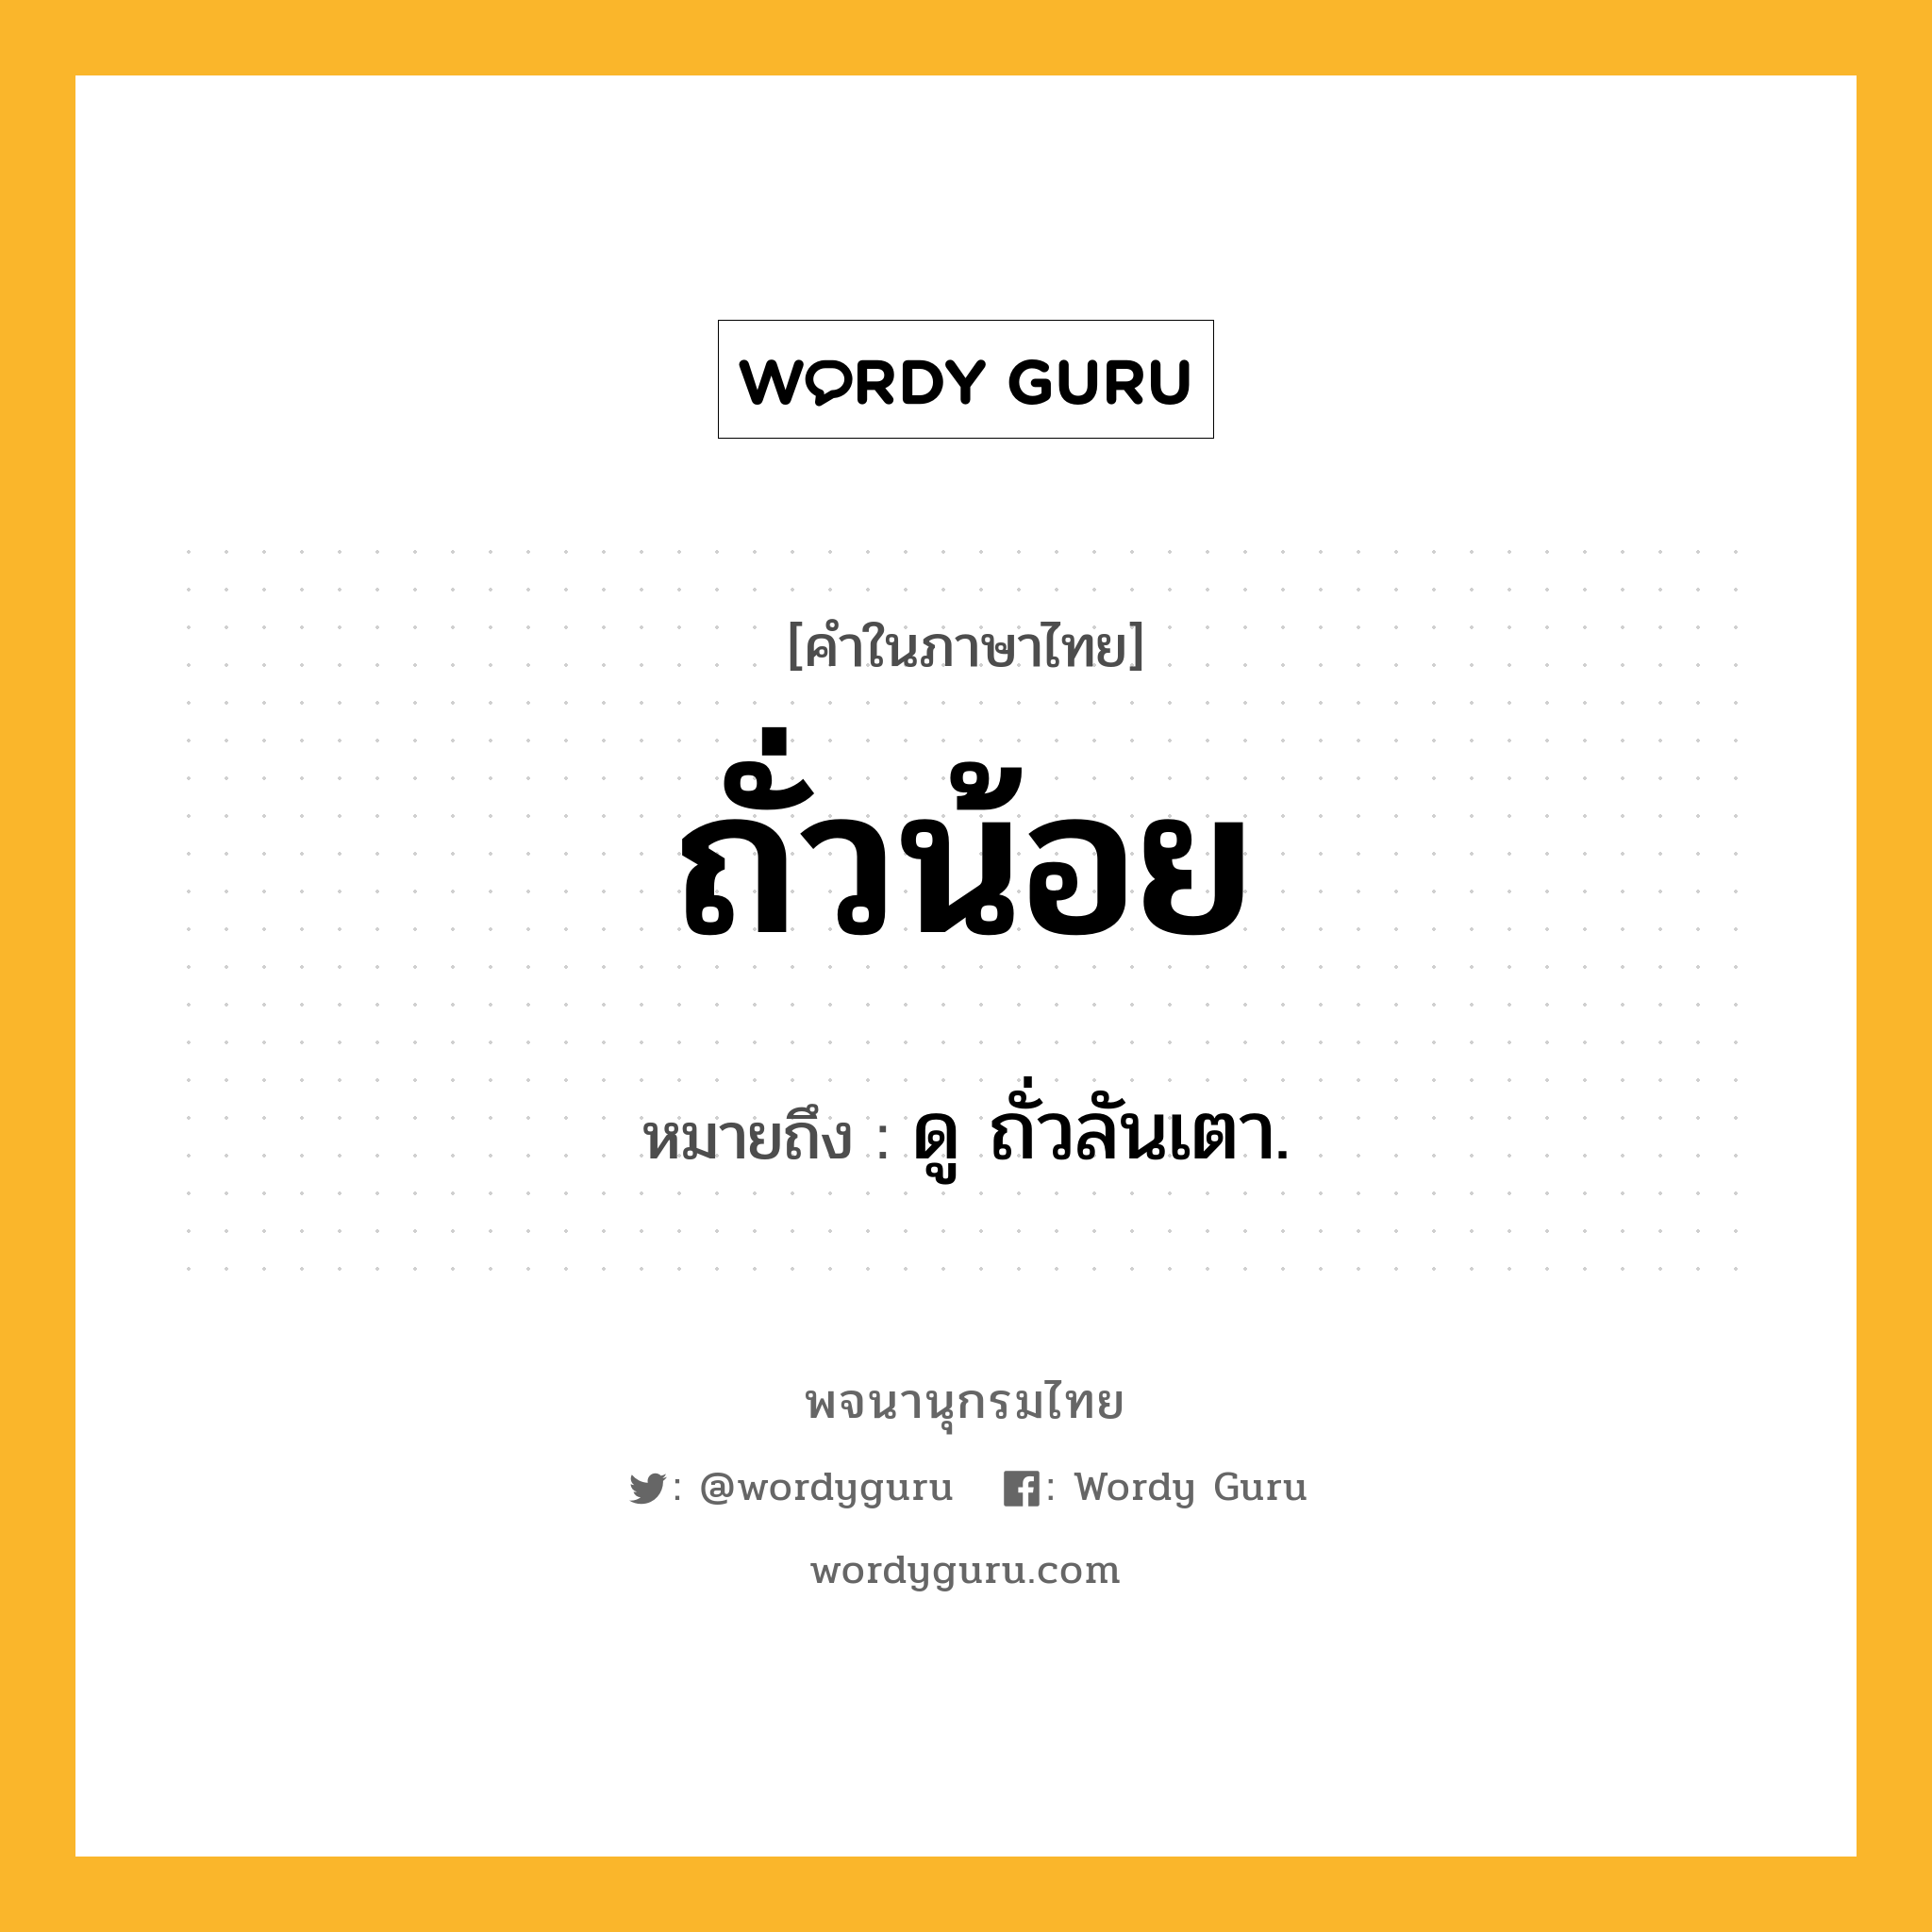 ถั่วน้อย หมายถึงอะไร?, คำในภาษาไทย ถั่วน้อย หมายถึง ดู ถั่วลันเตา.